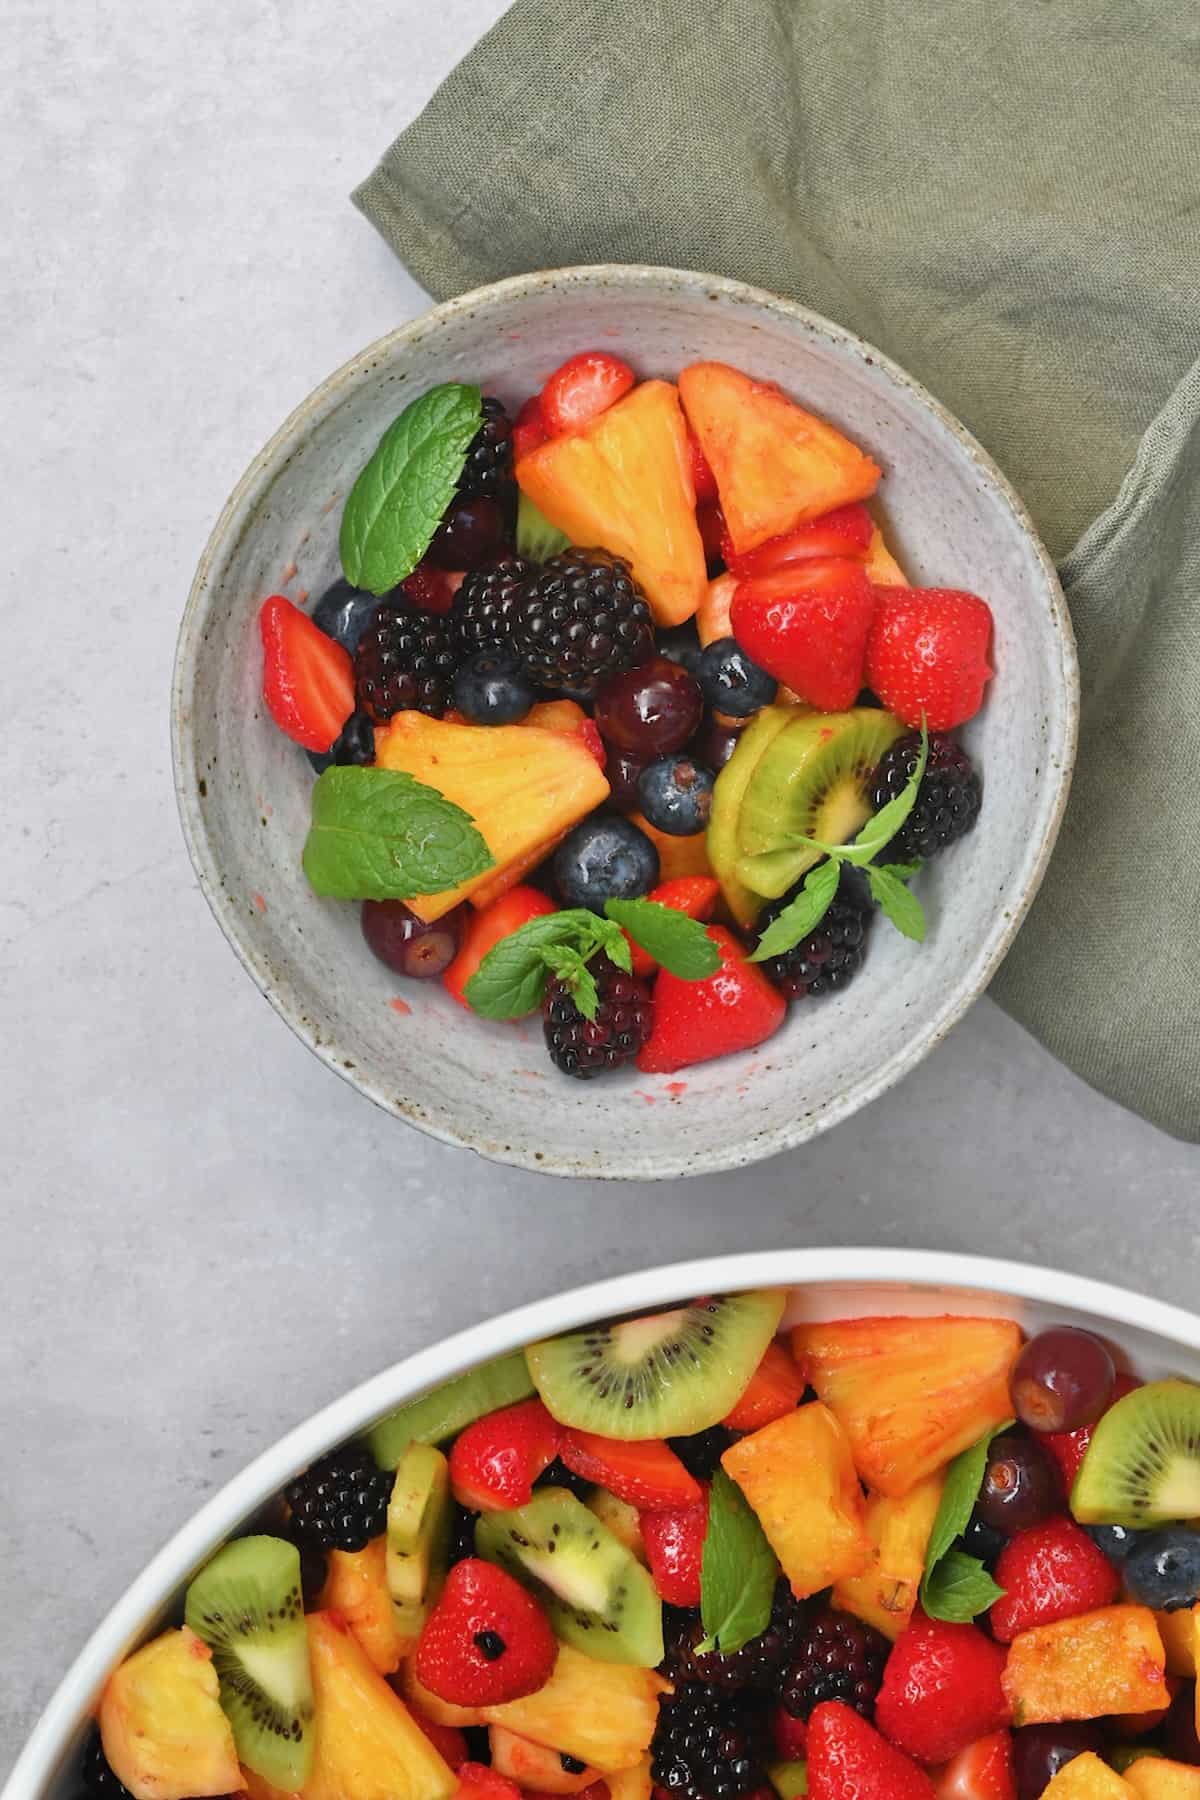 A serving of fruit salad